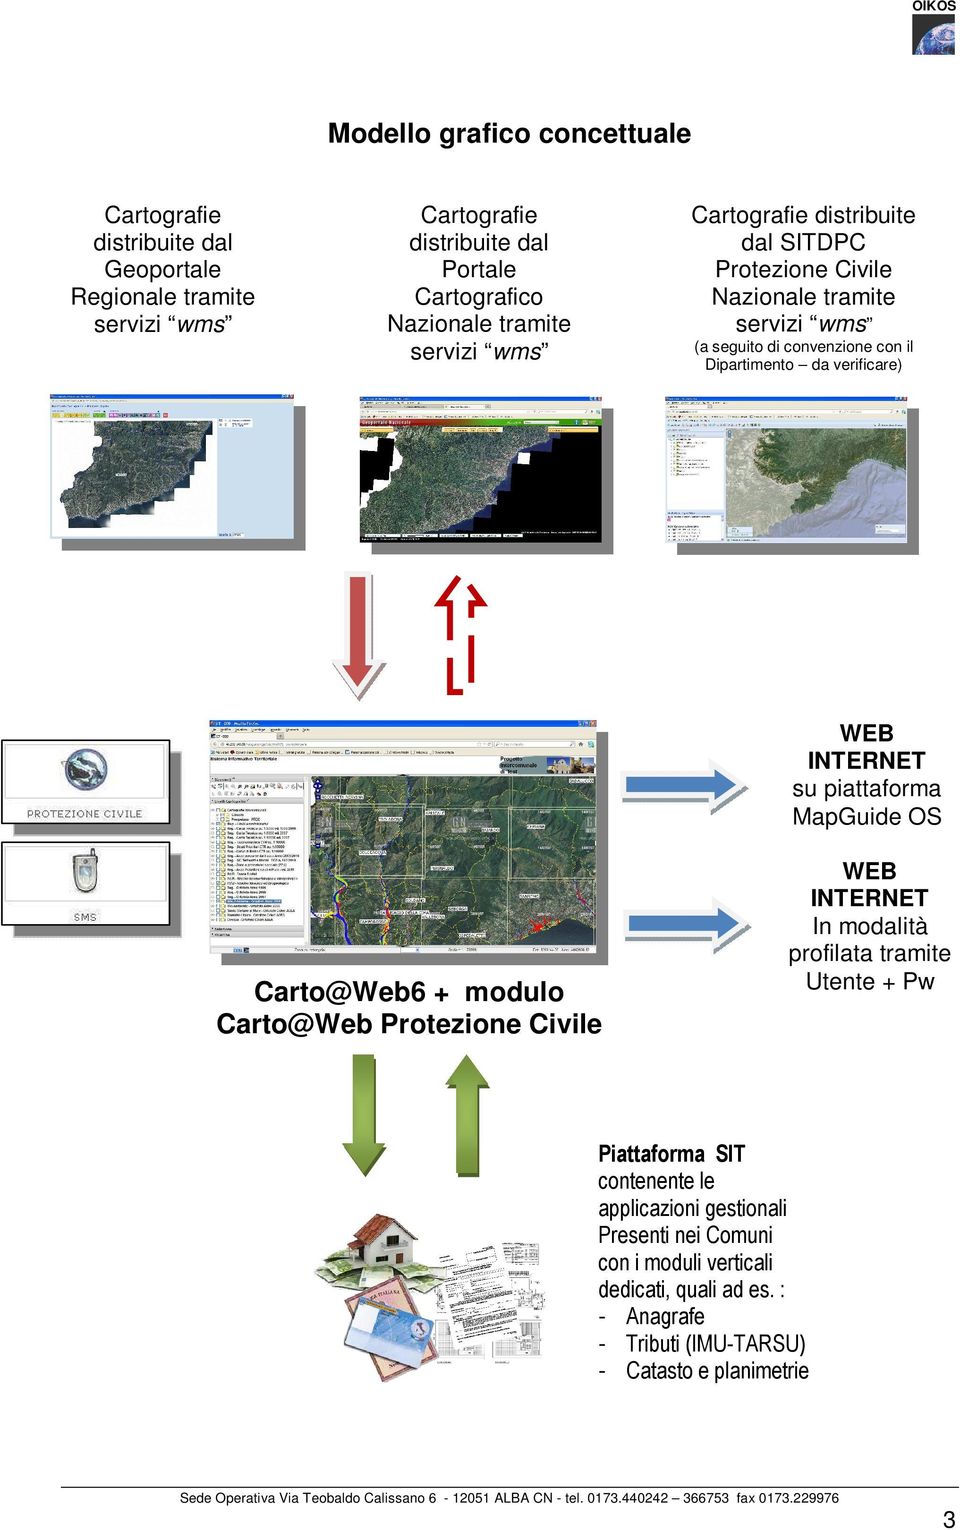 verificare) WEB INTERNET su piattaforma MapGuide OS Carto@Web6 + modulo Carto@Web Protezione Civile WEB INTERNET In modalità profilata tramite Utente + Pw